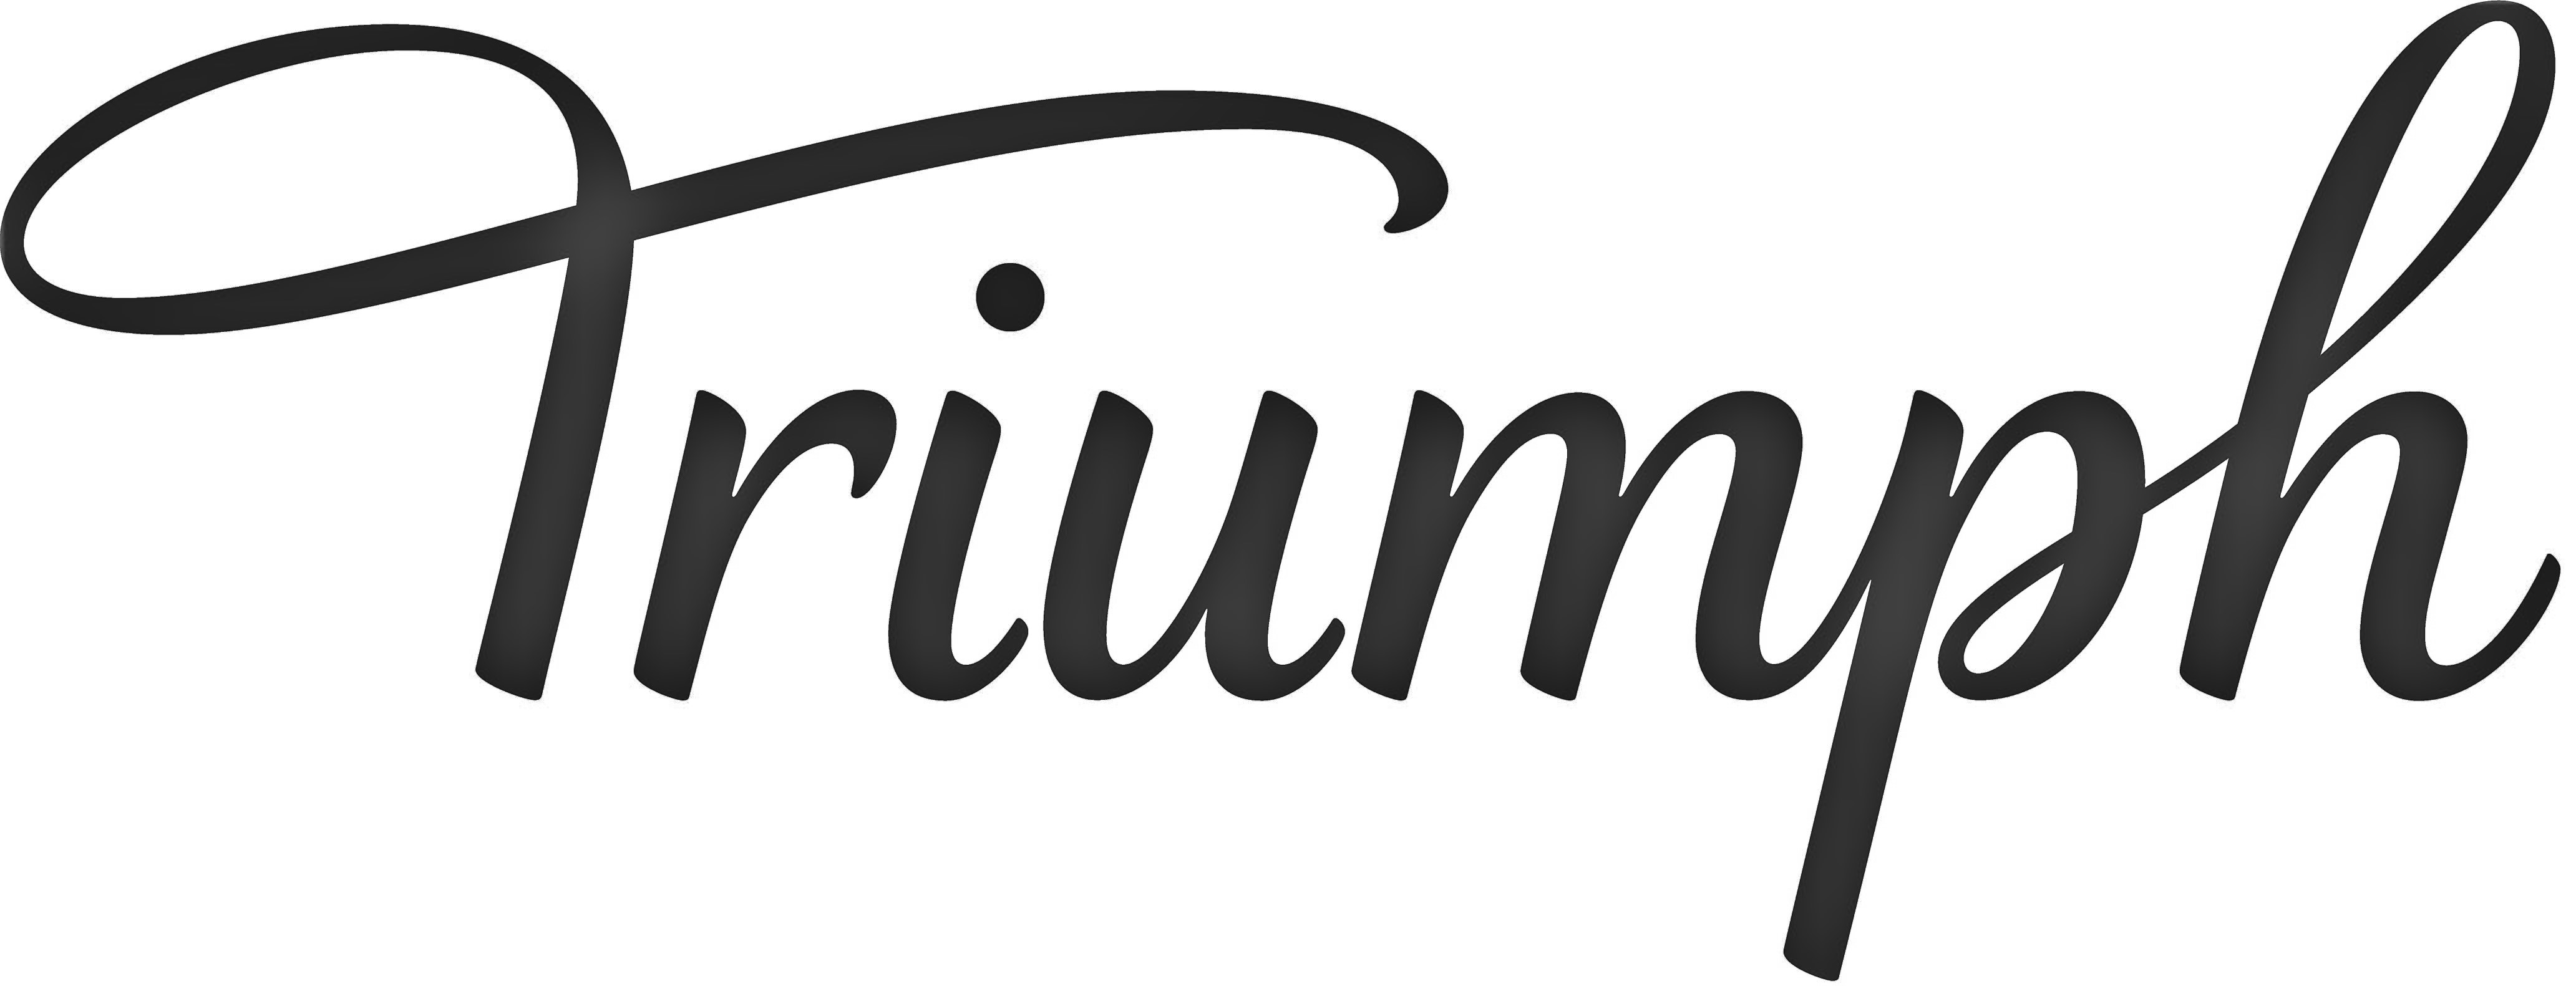 Triumph_logo_12.22.jpg